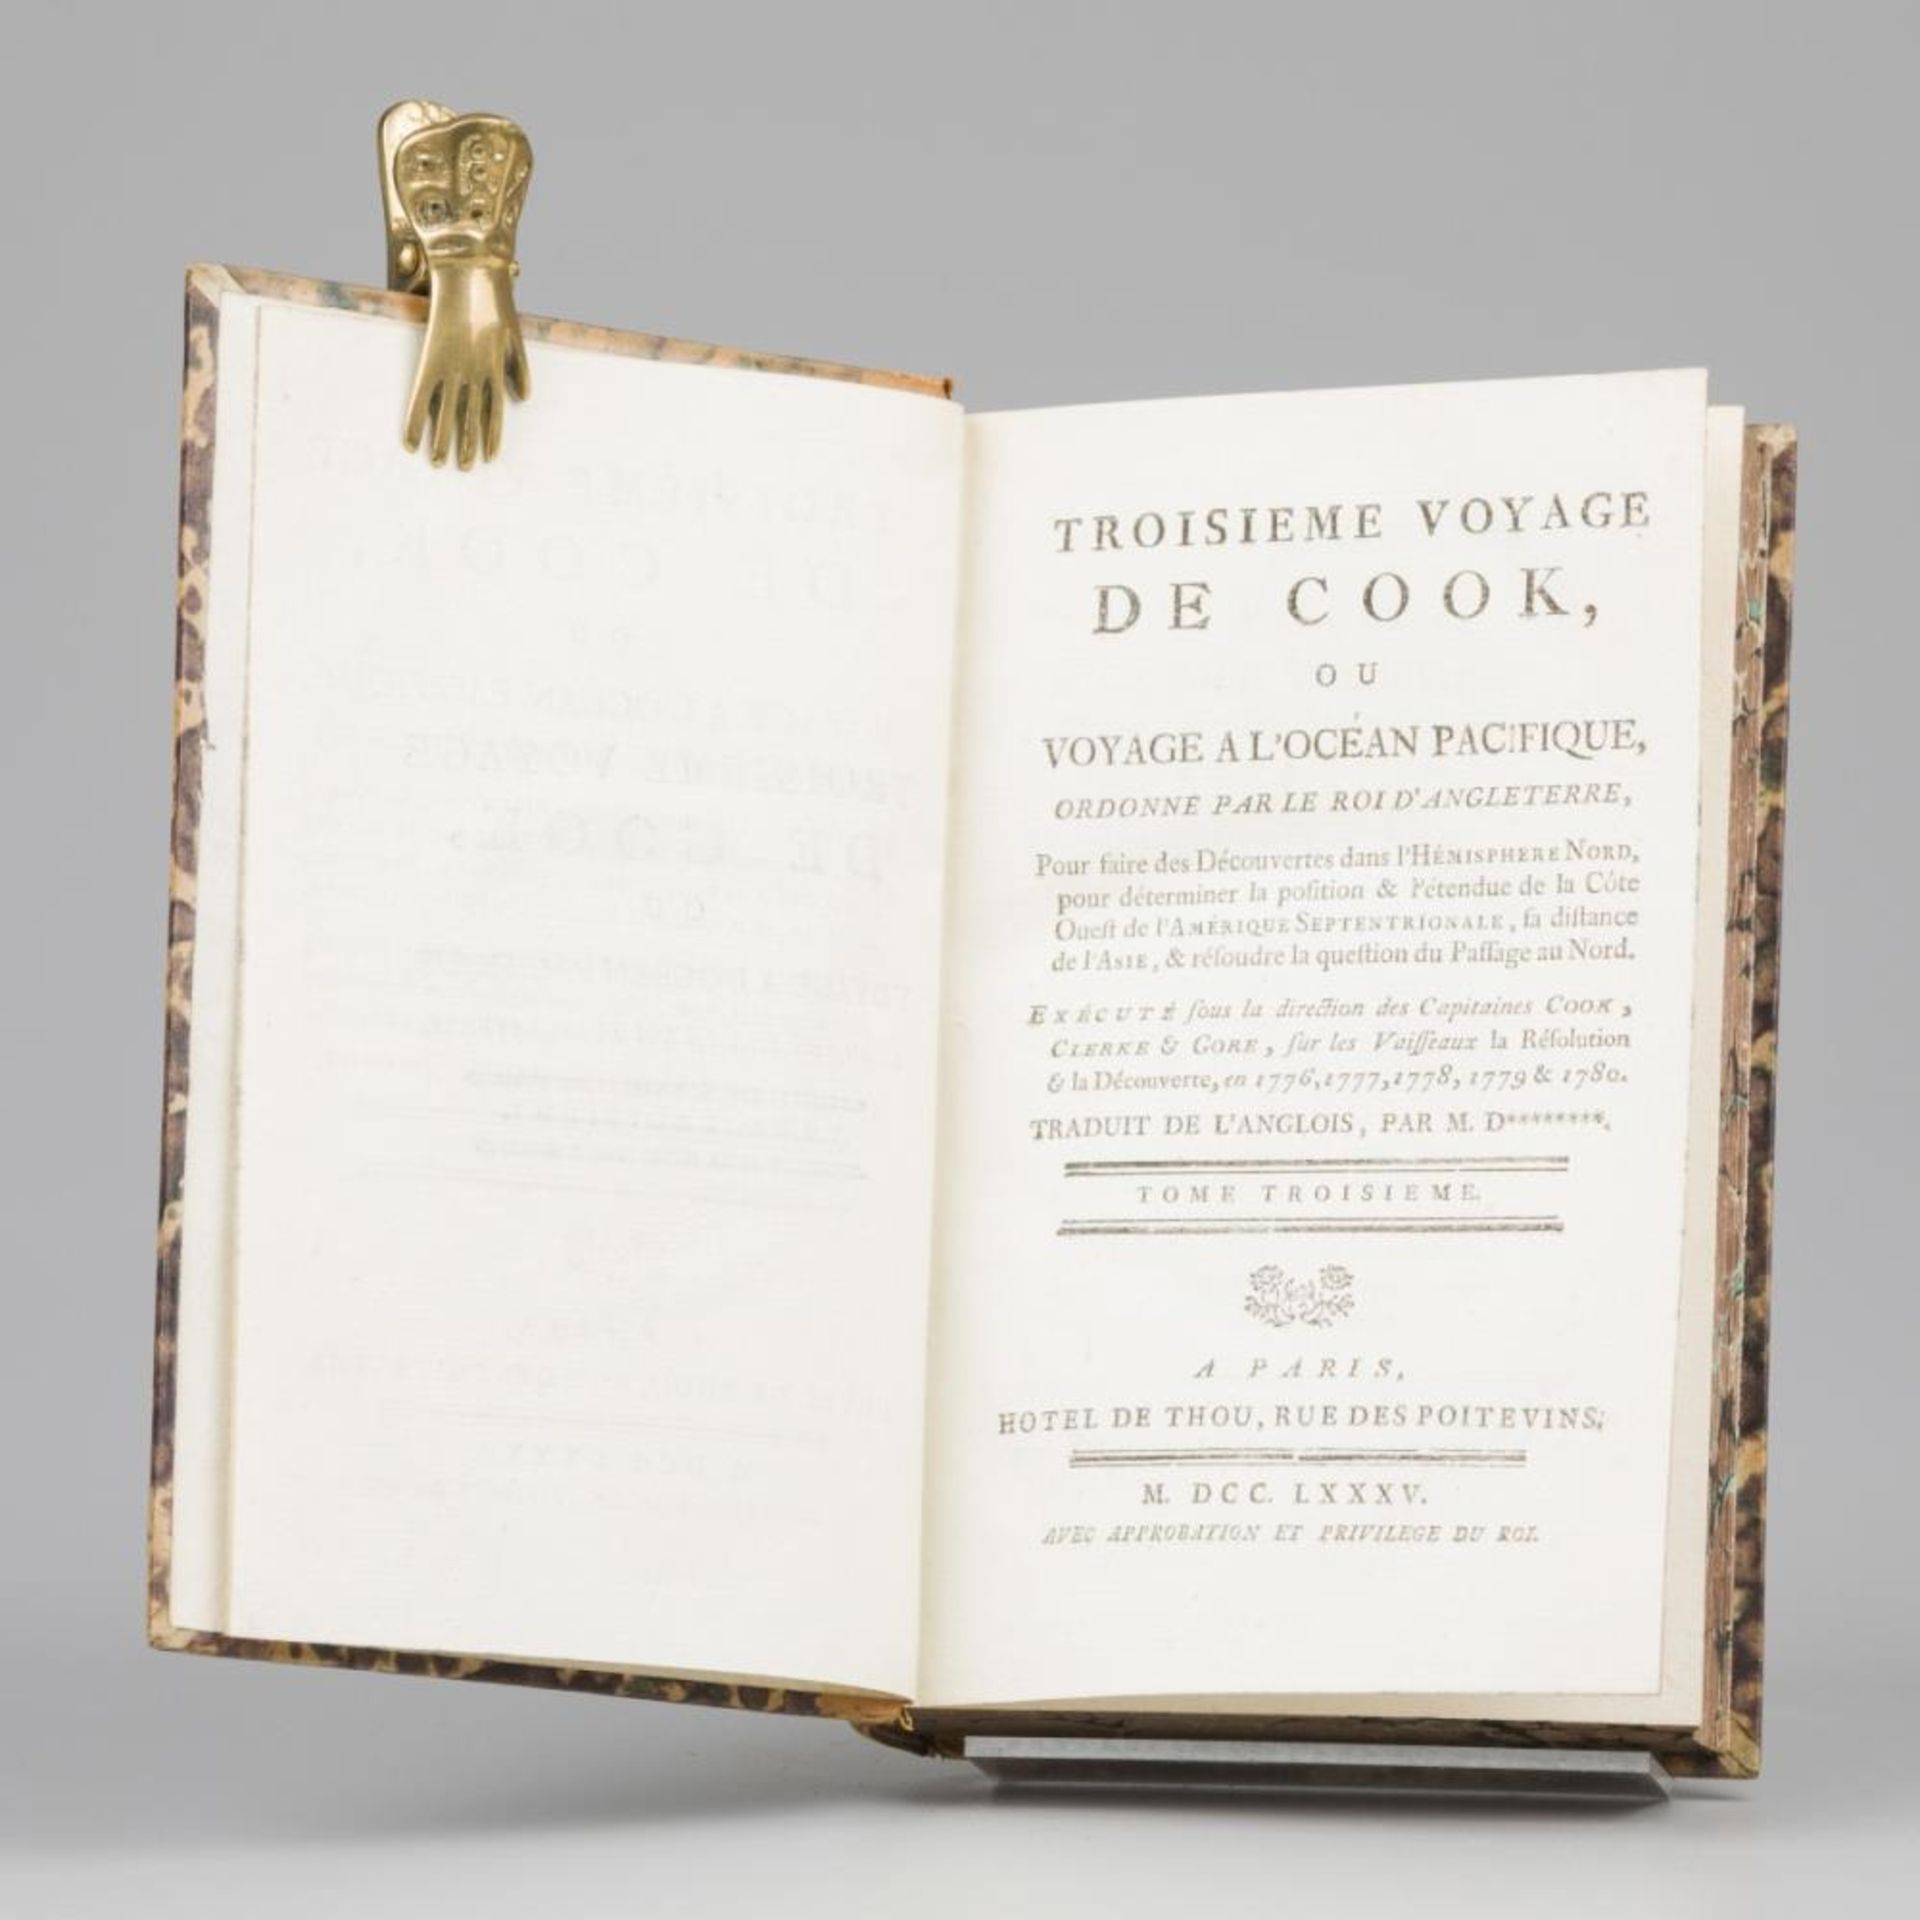 James Cook (1728 – 1779), Troisième Voyage de Cook, Hôtel de Thou, Parijs, 1785. - Bild 7 aus 12